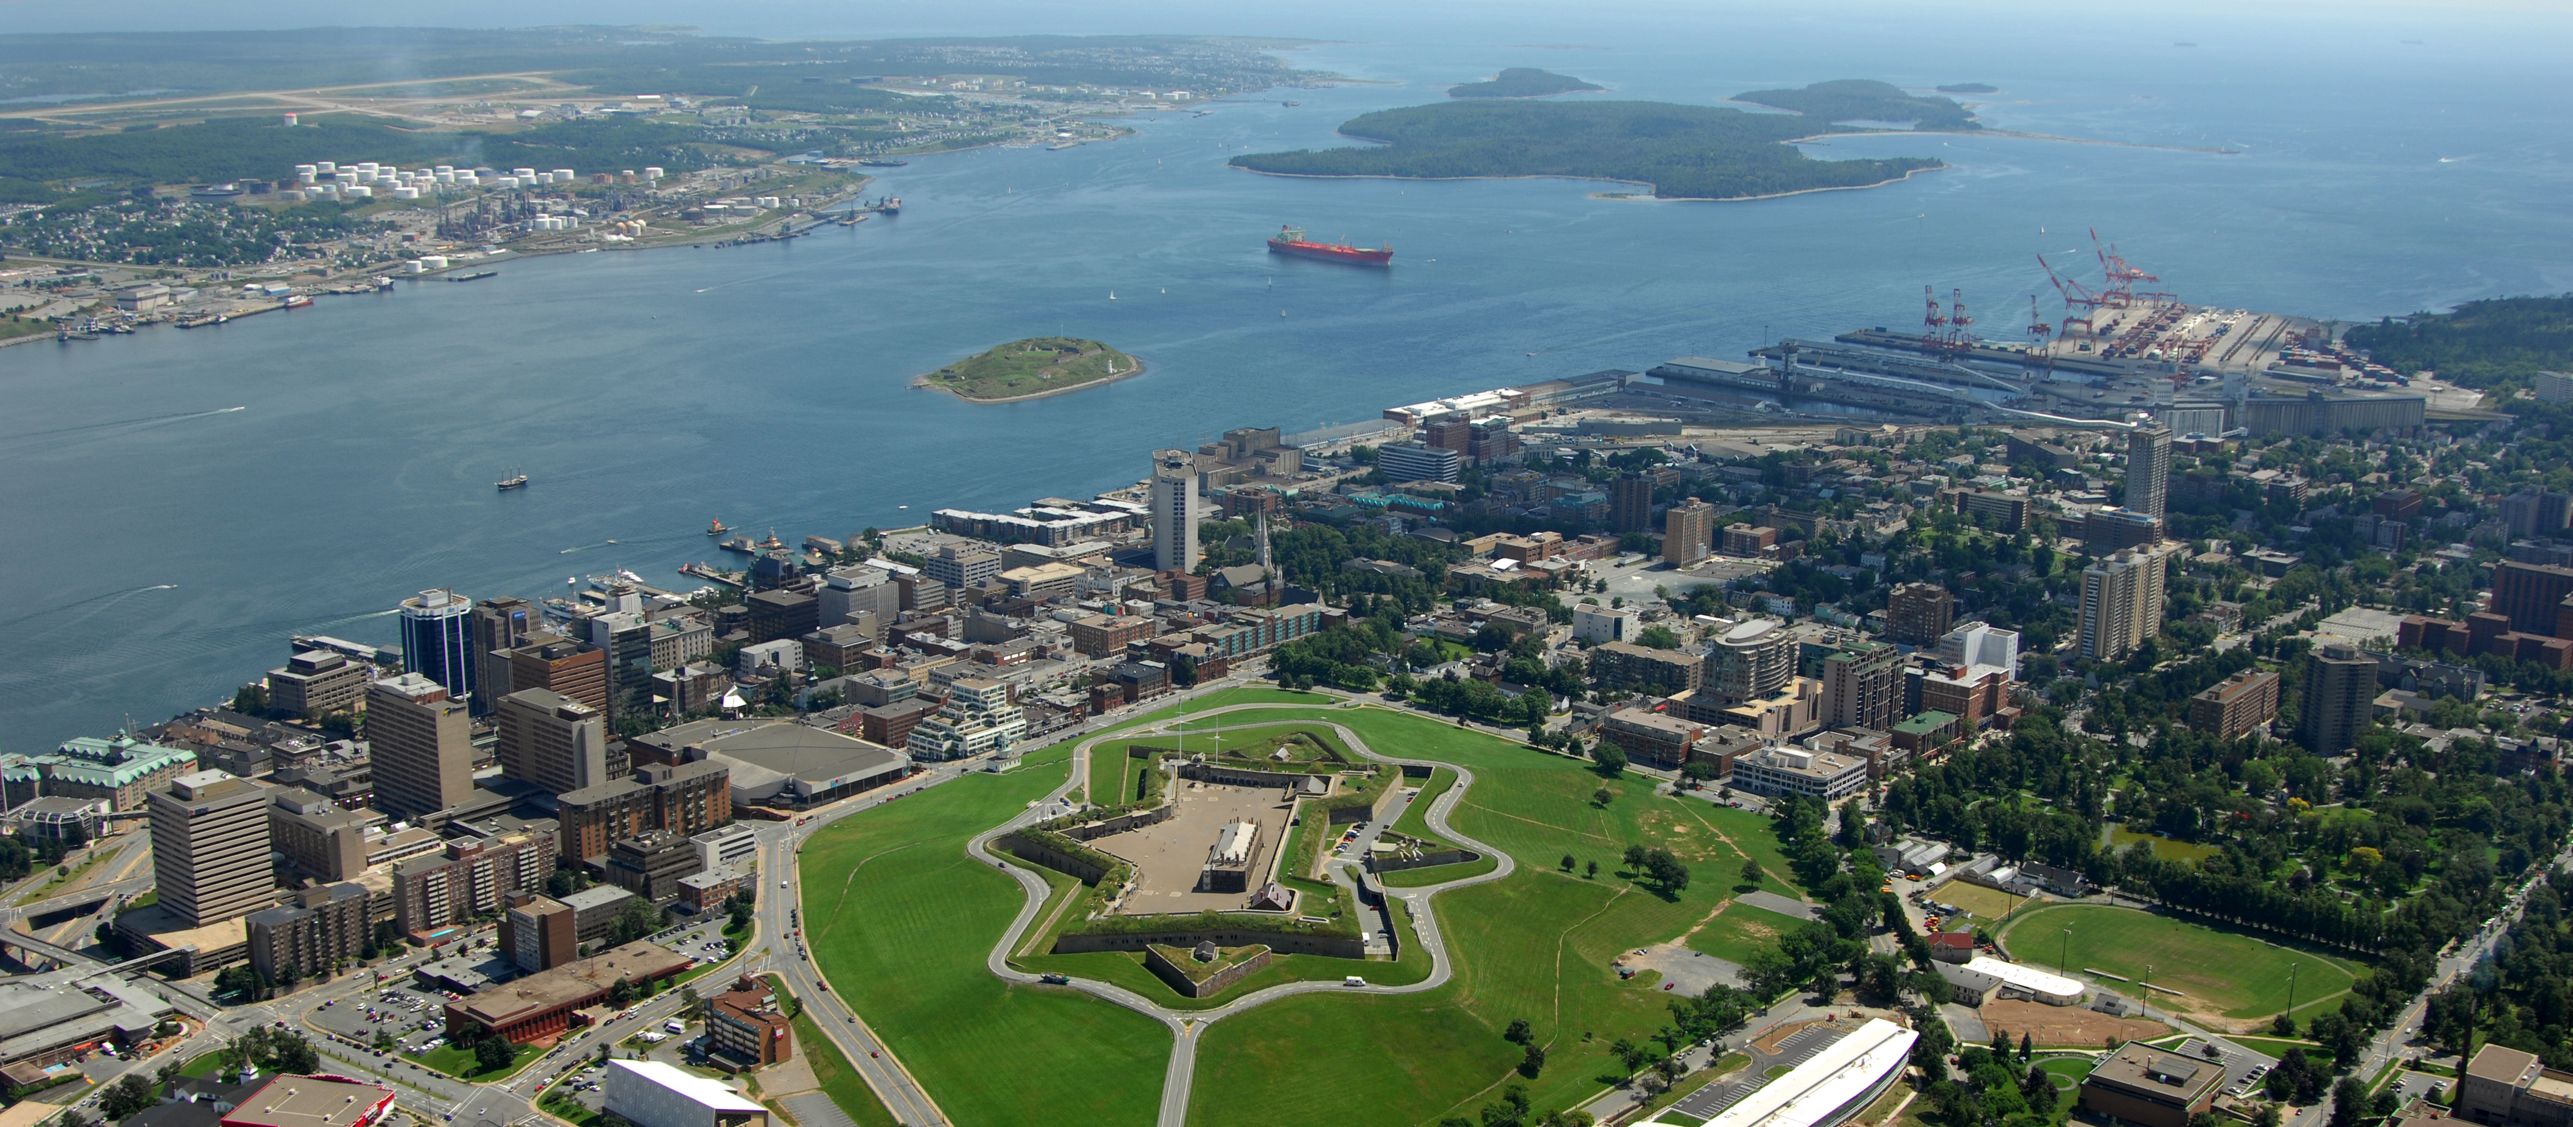 Zitadelle von Halifax